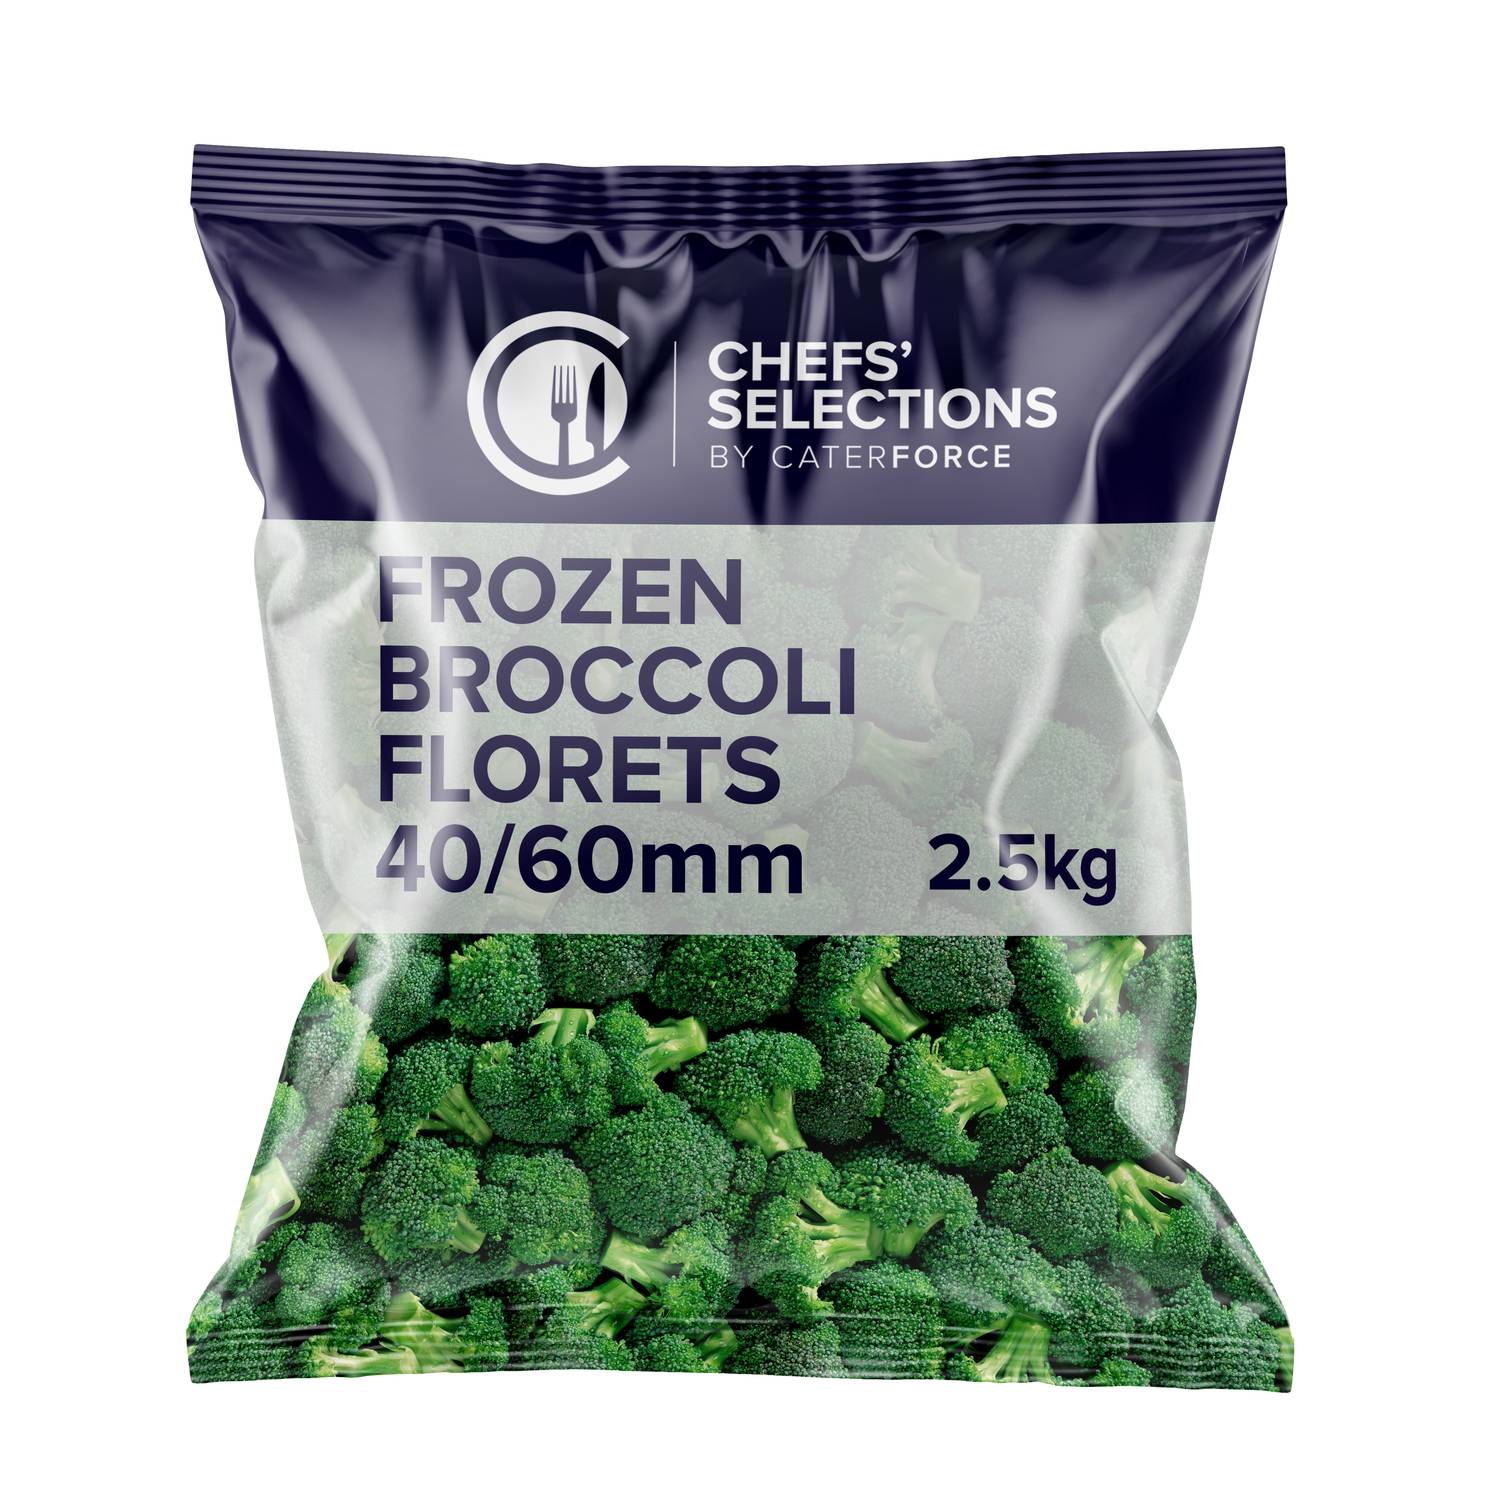 Chefs’ Selections Frozen Broccoli Florets 40/60mm (4 x 2.5kg)